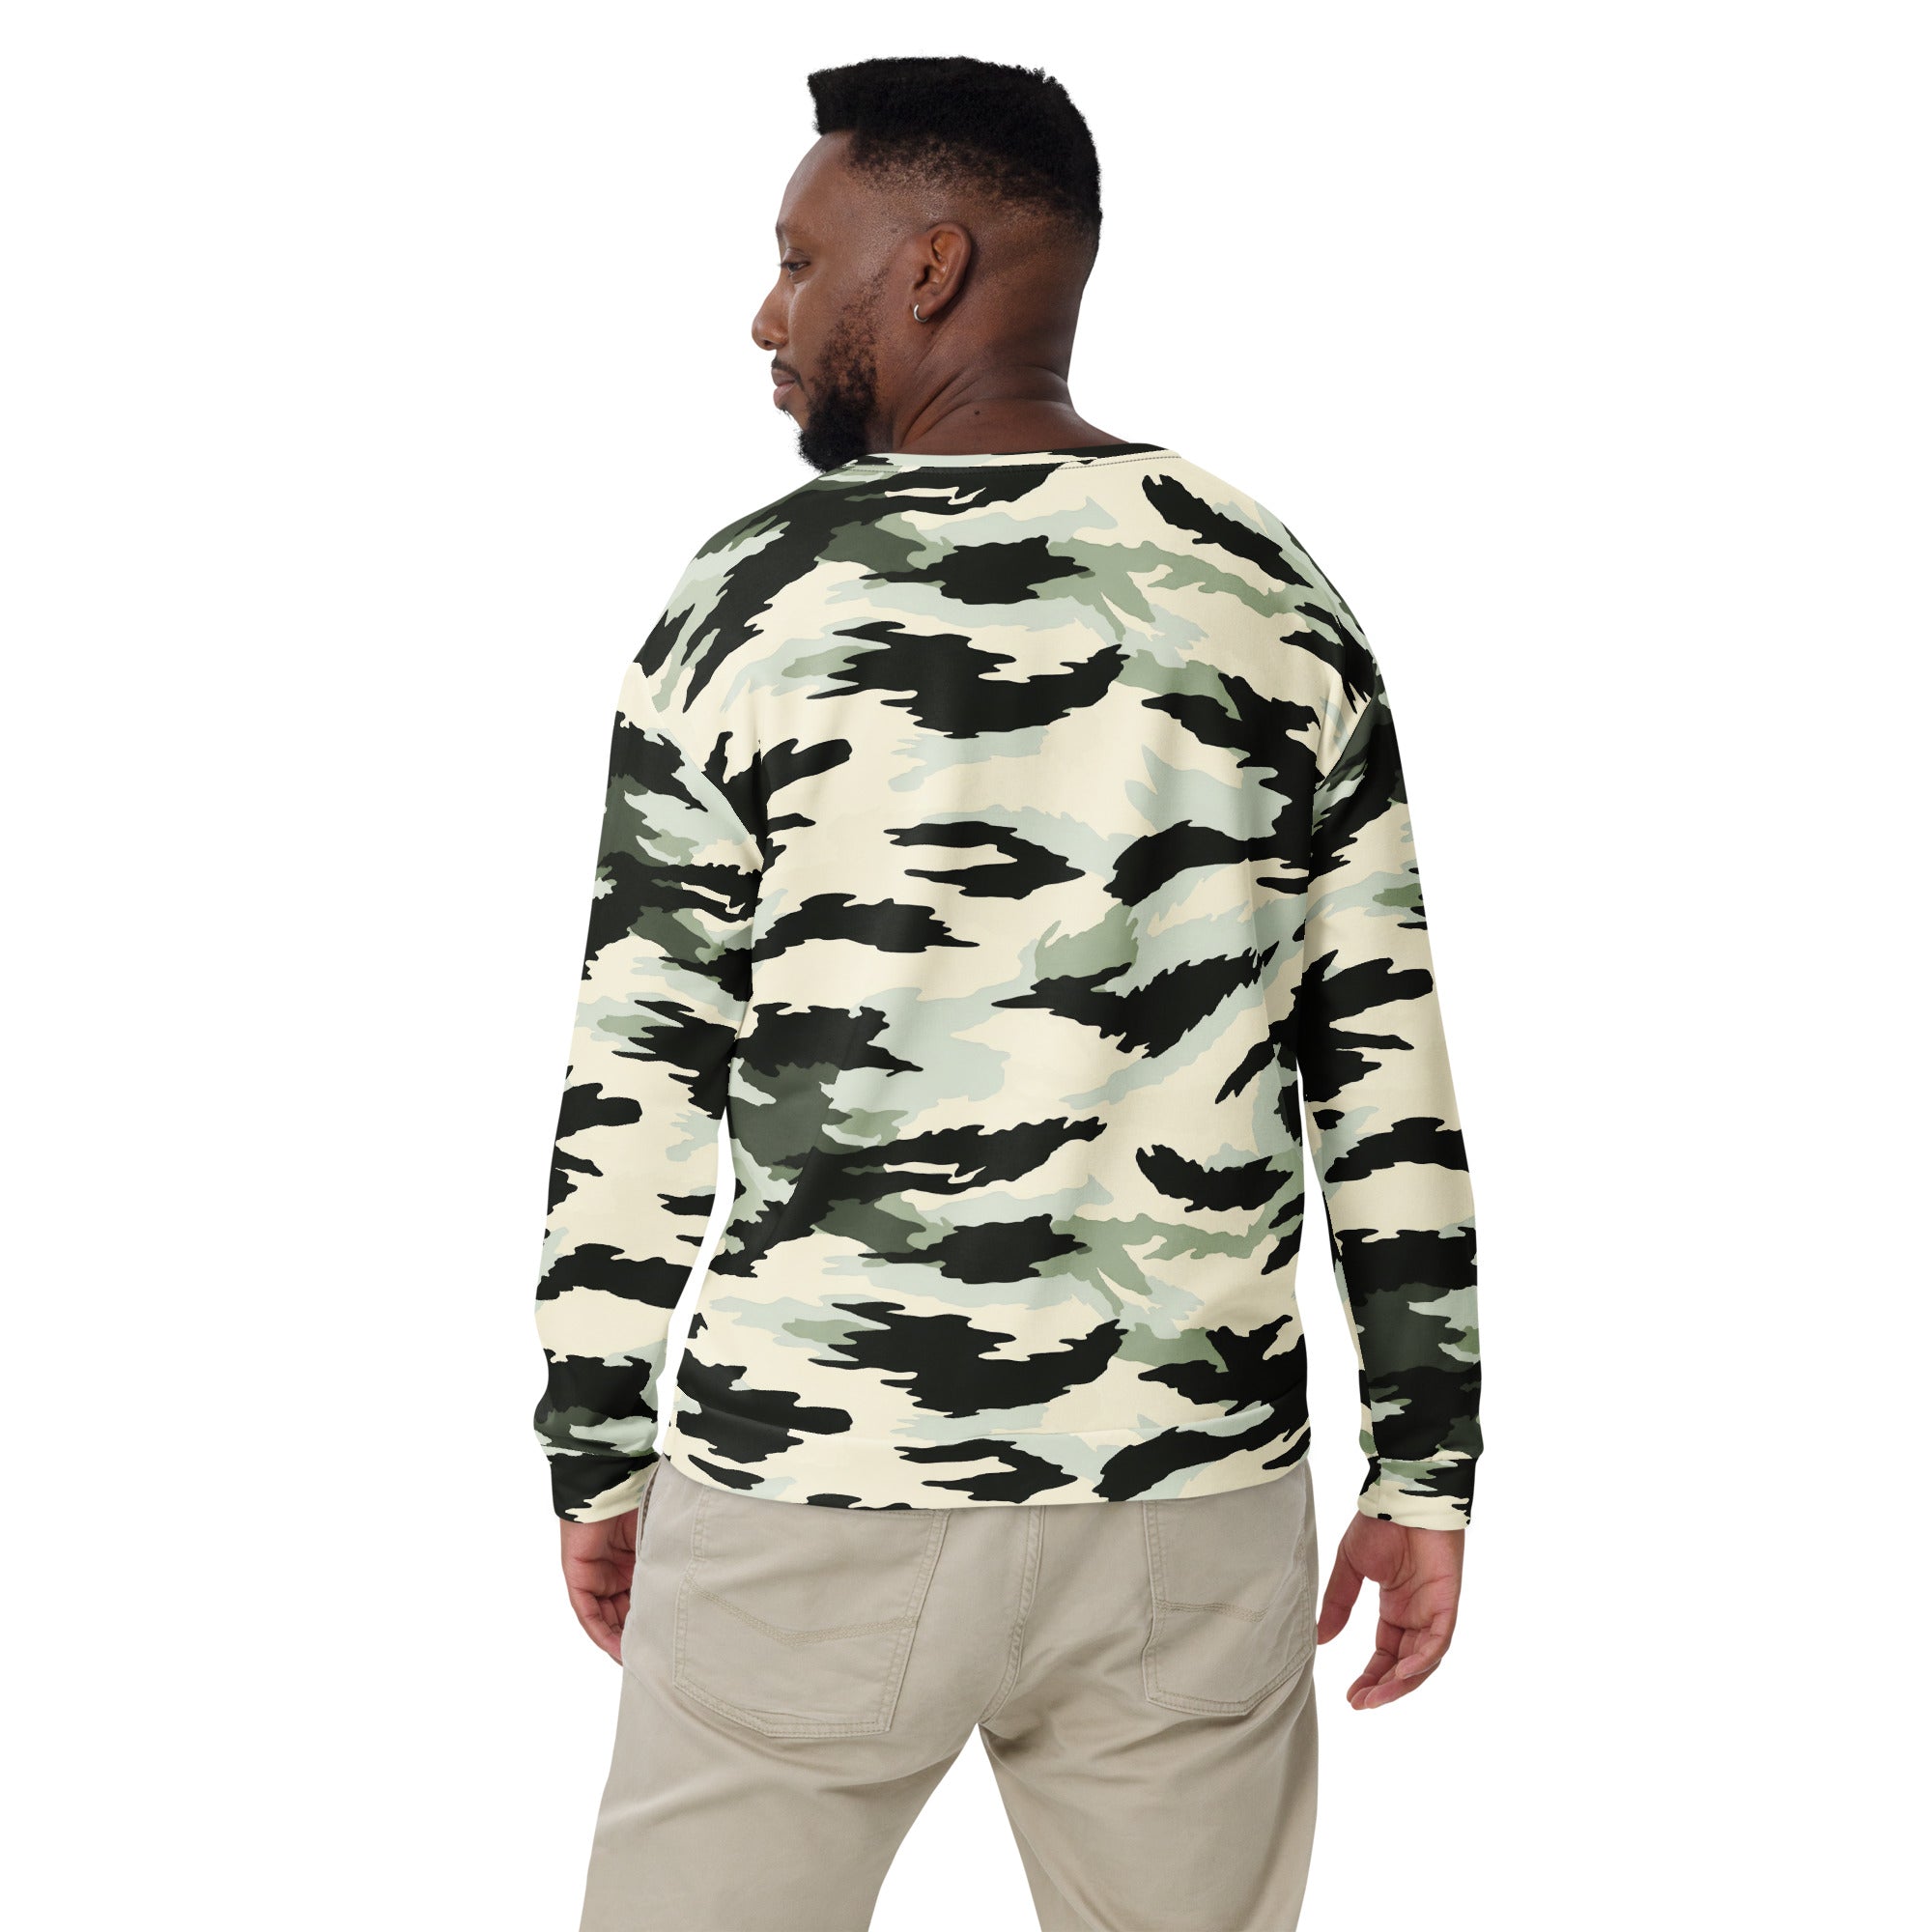 American Boreal Tiger Stripe Camouflage Crewneck Sweatshirt